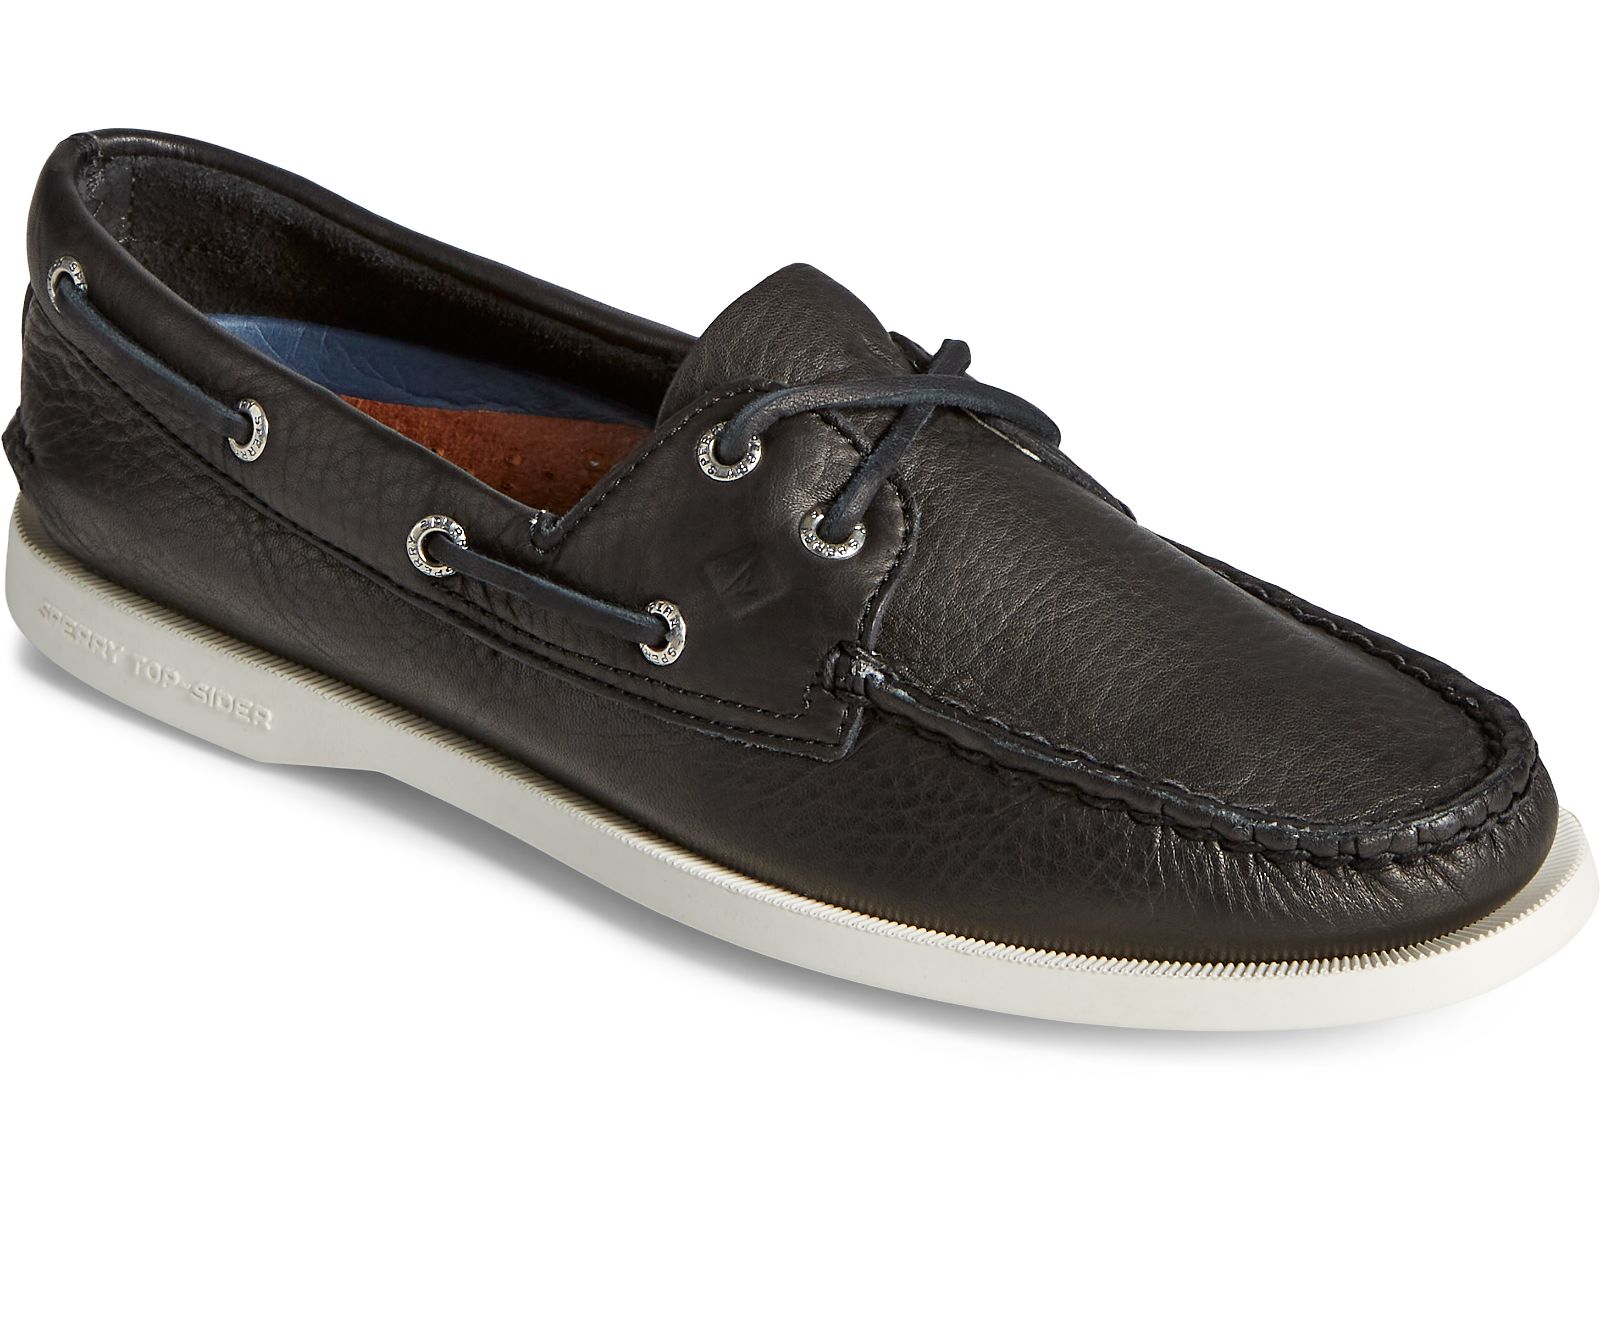 Women's Authentic Original Boat Shoe - Black [sperry shoes 0665] - $87. ...